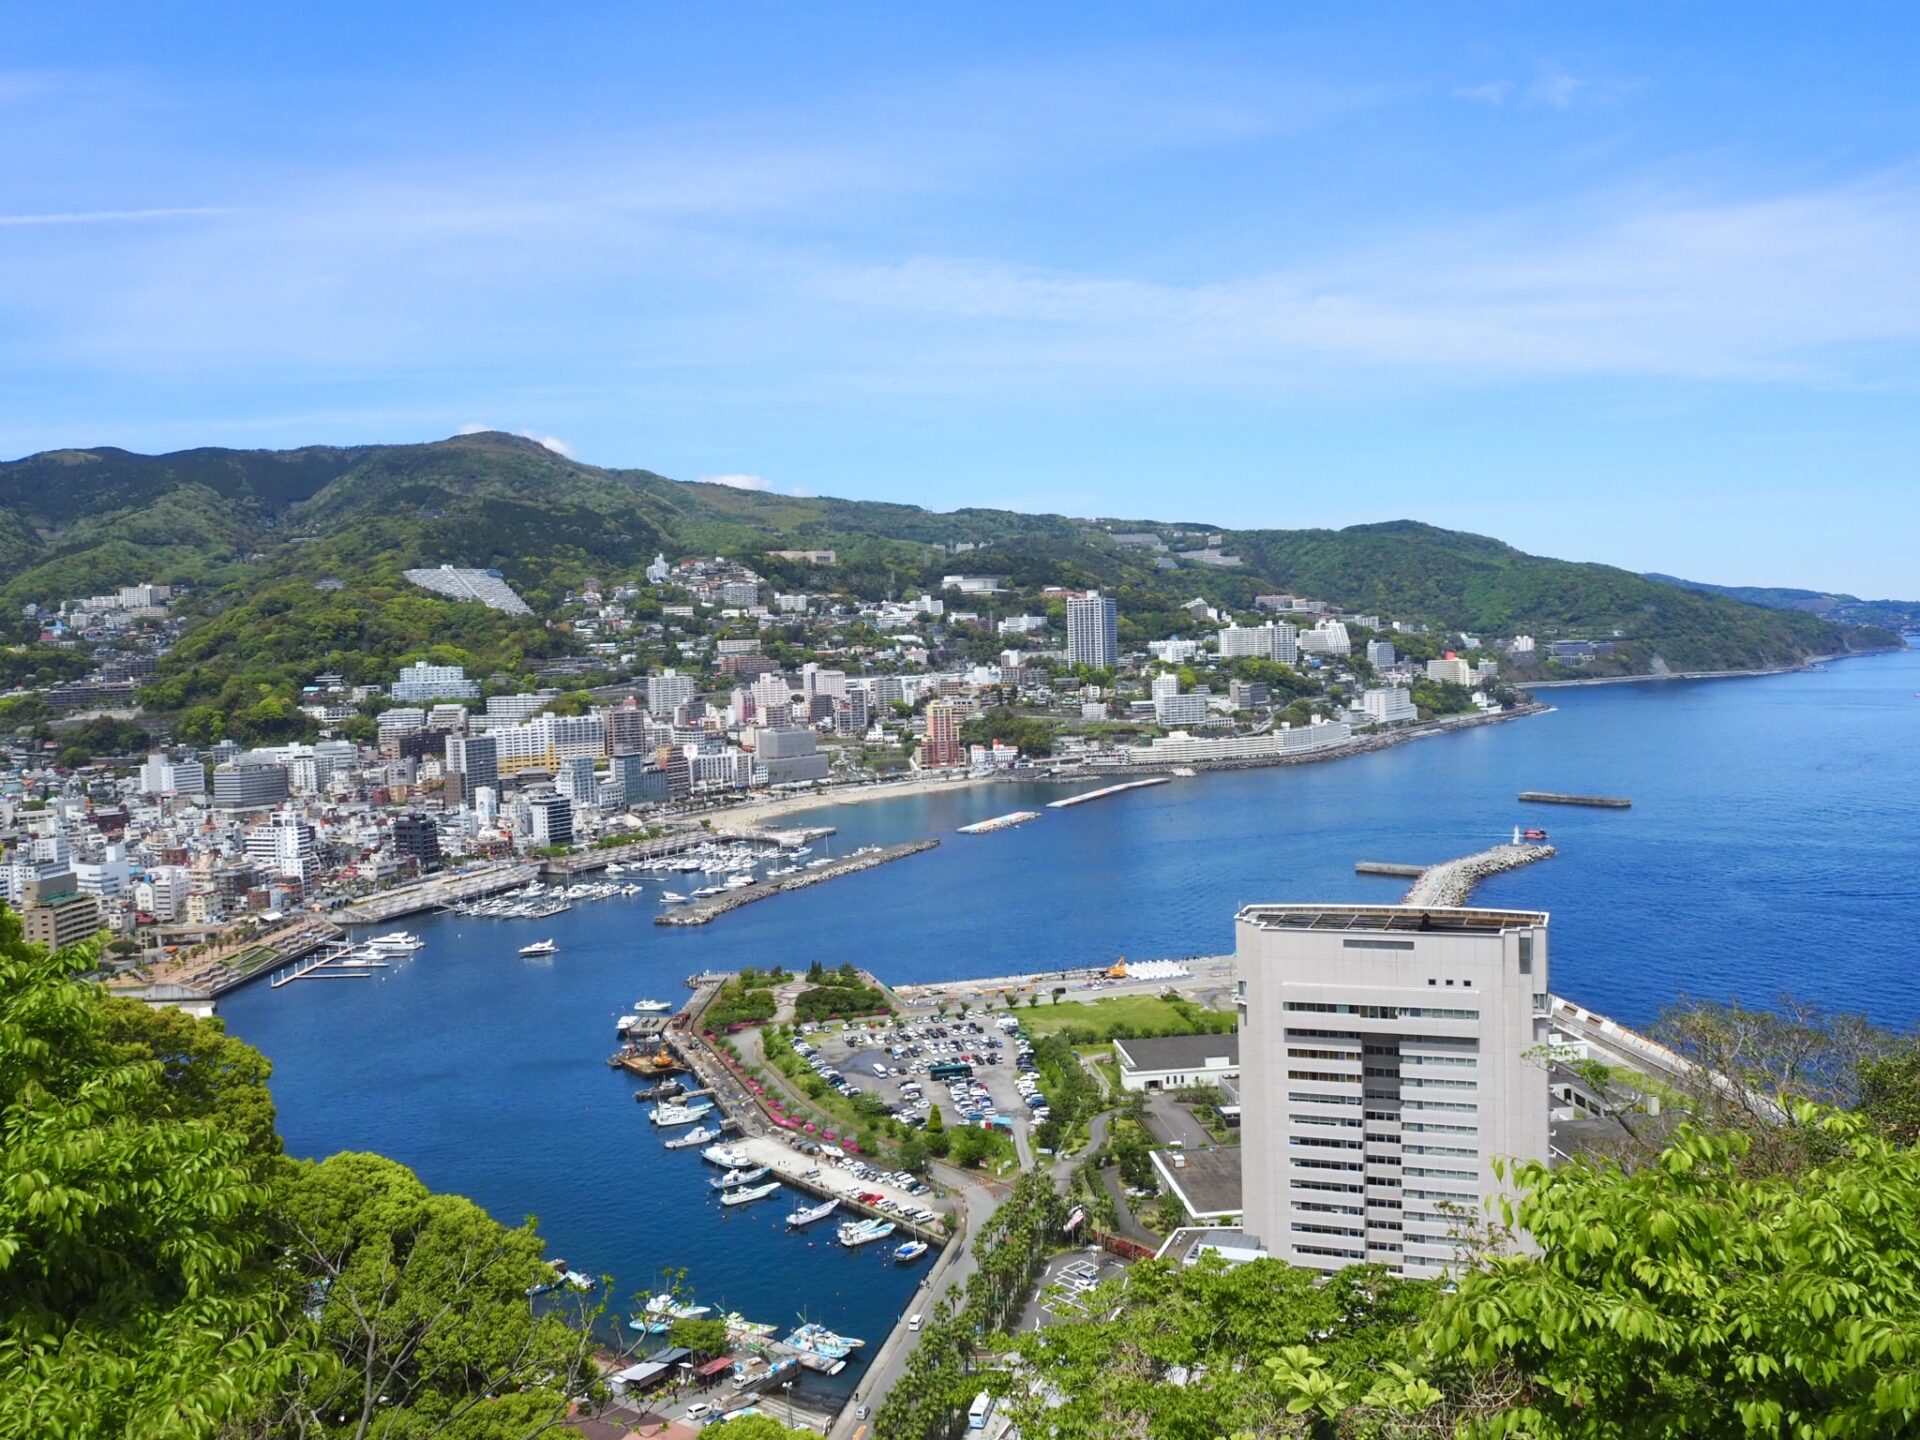 View of Atami